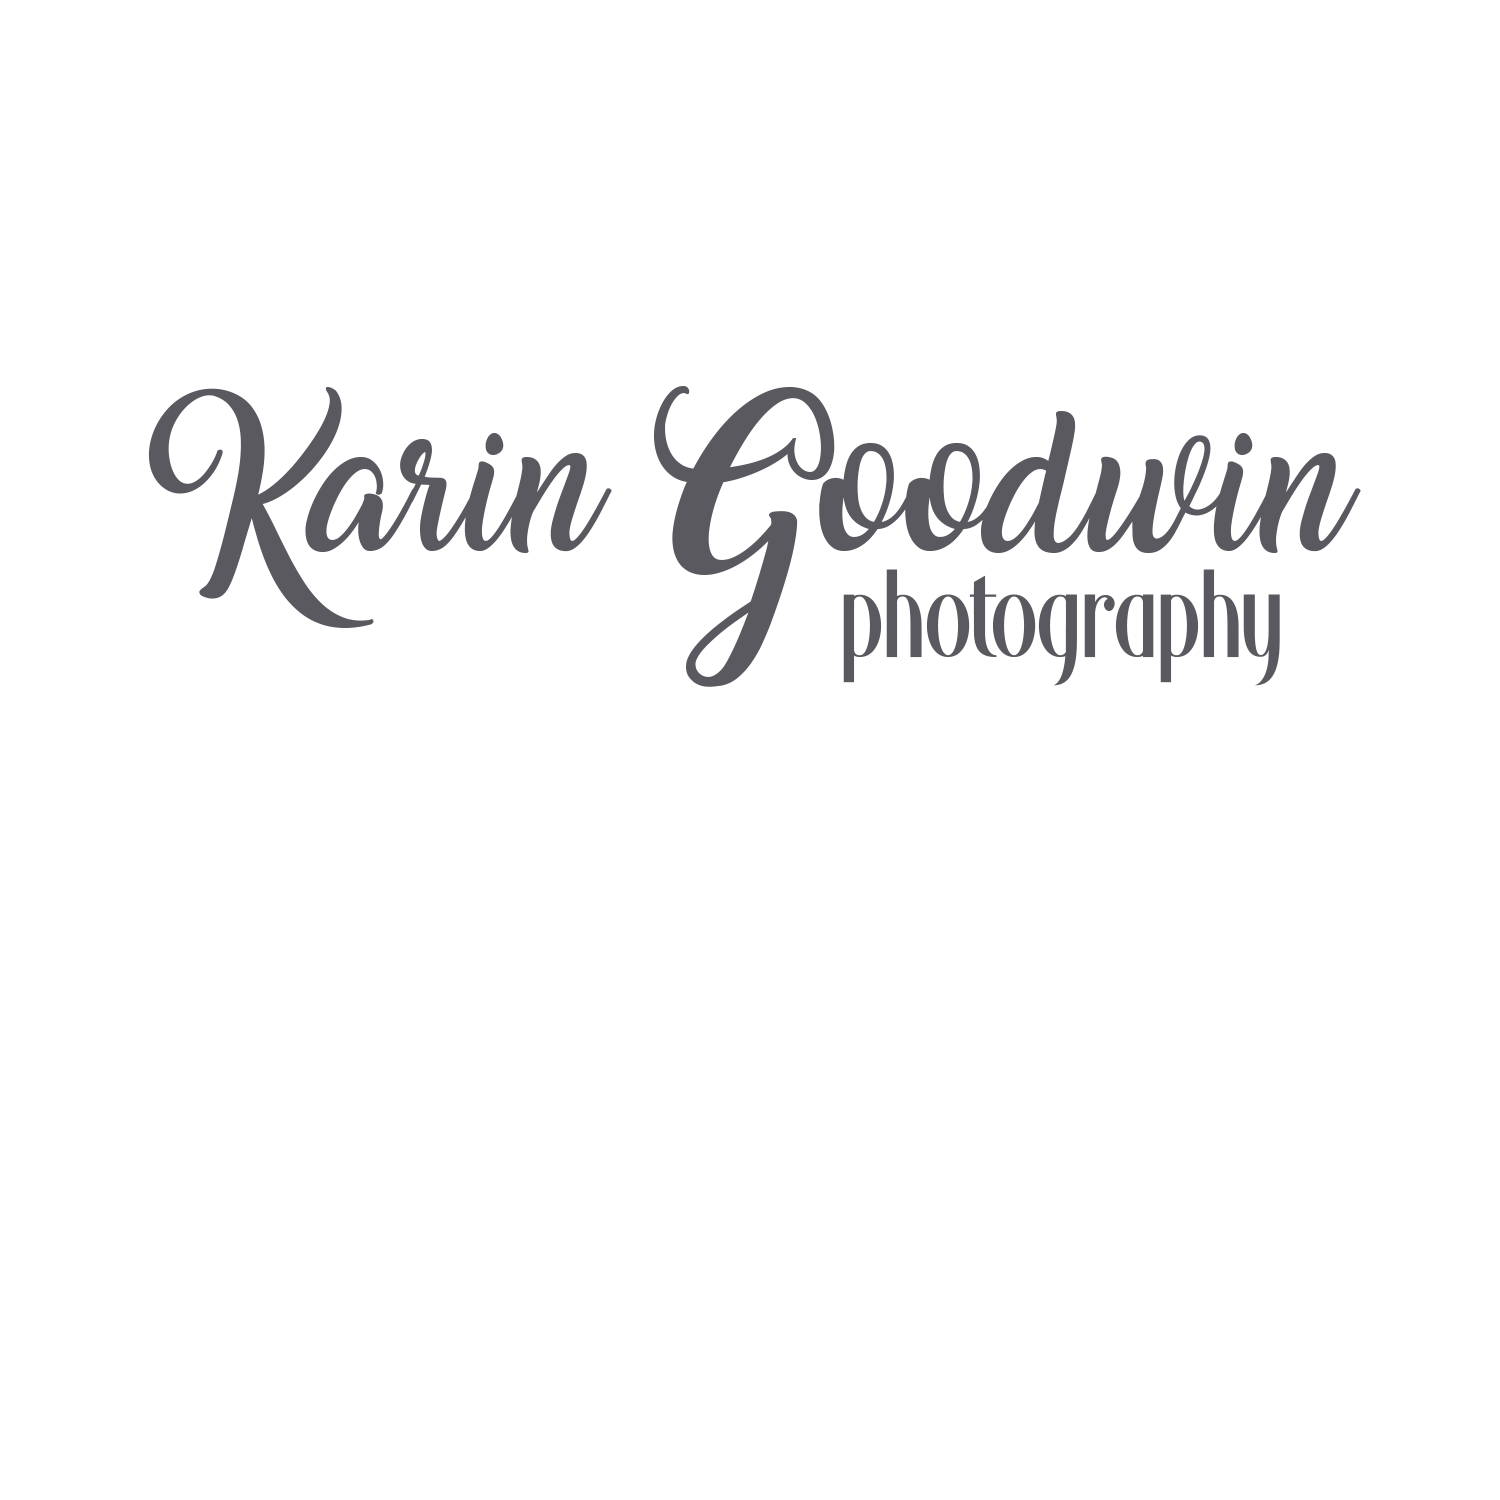 Karin Goodwin Photography